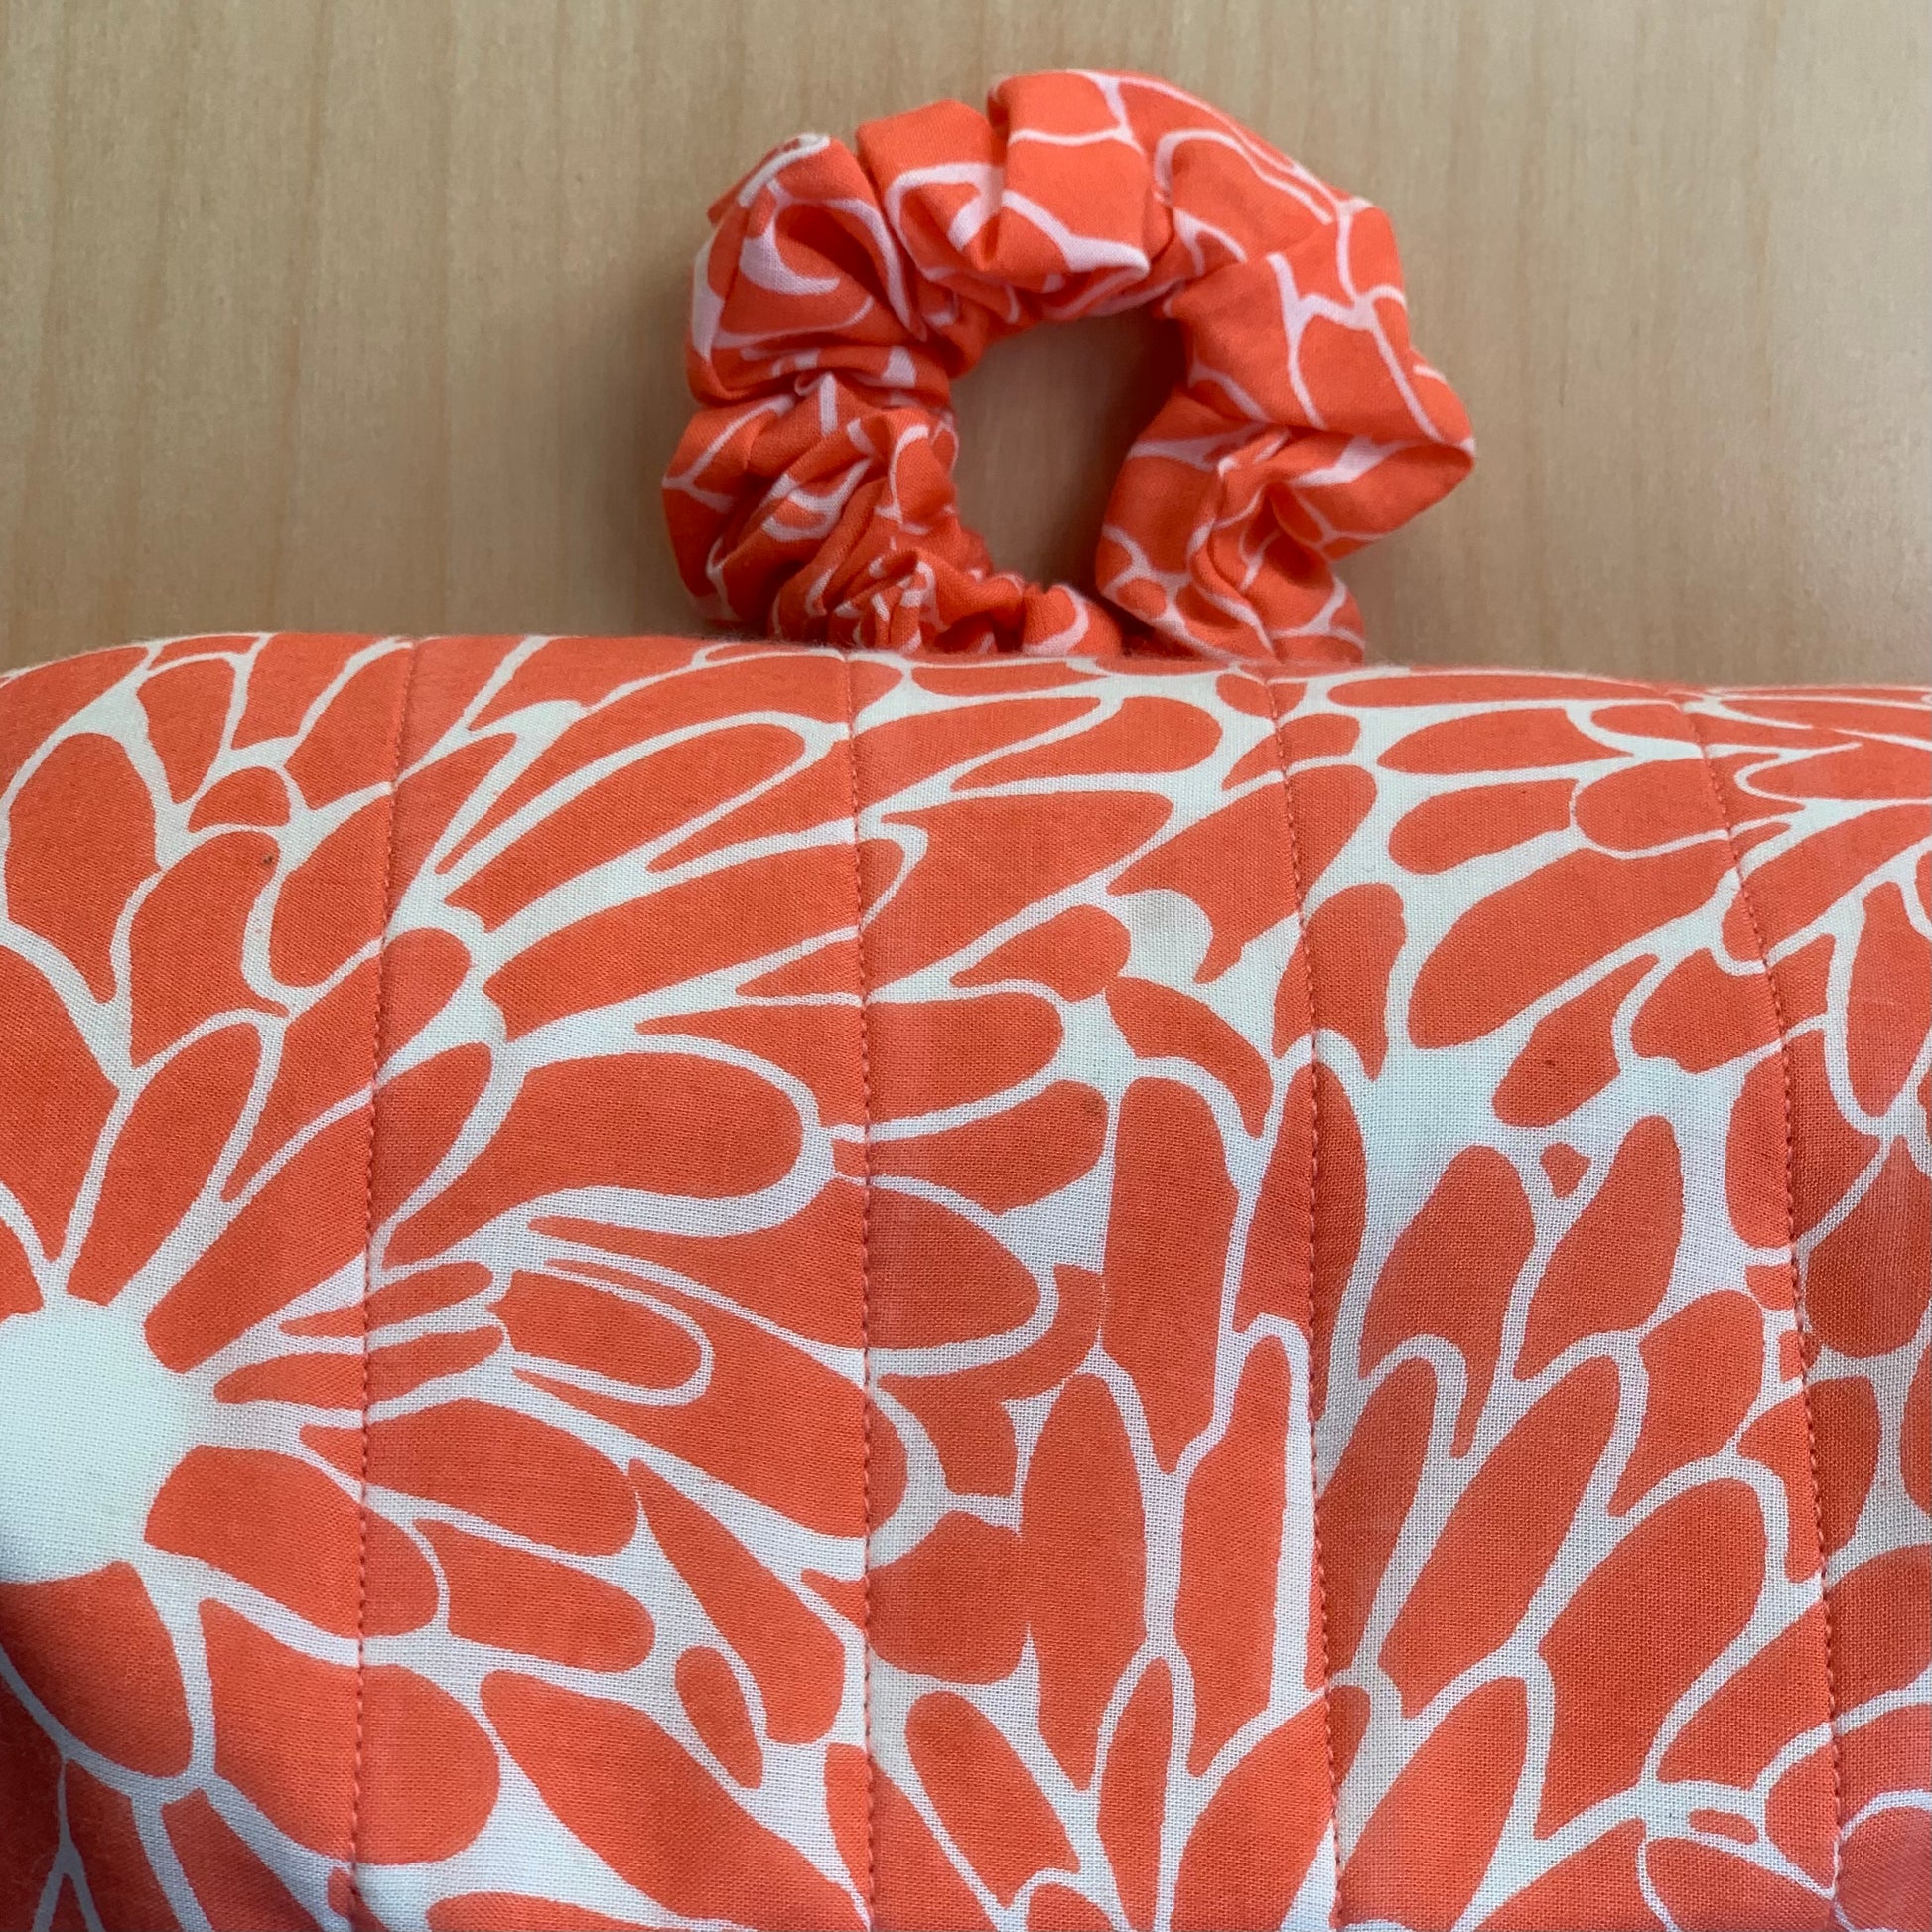 Maelu Designs Scrunchie Block print with Zip pouch